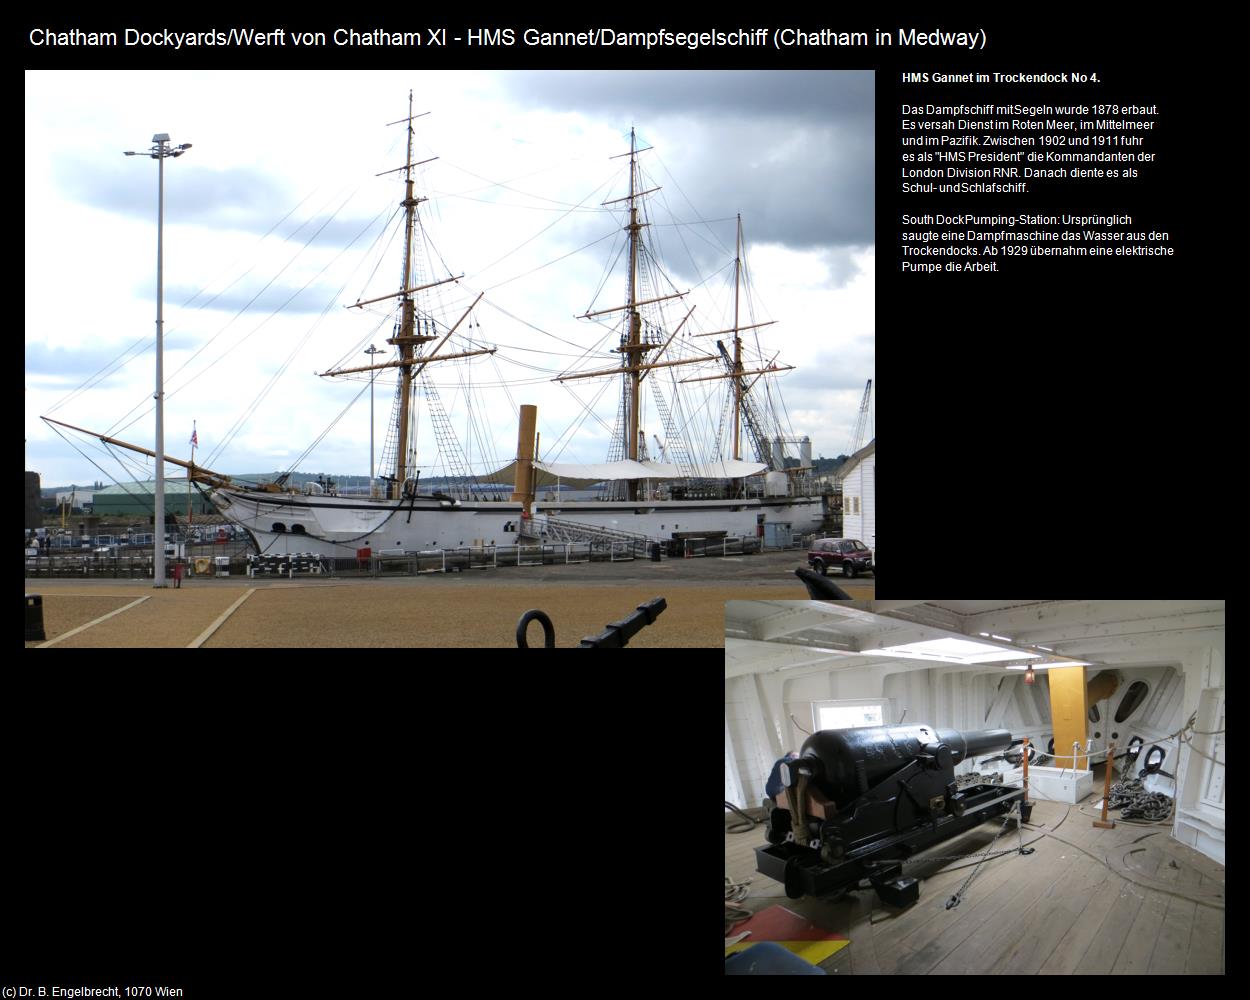 HMS Gannet/Dampfsegelschiff (Chatham in Medway, England) in Kulturatlas-ENGLAND und WALES